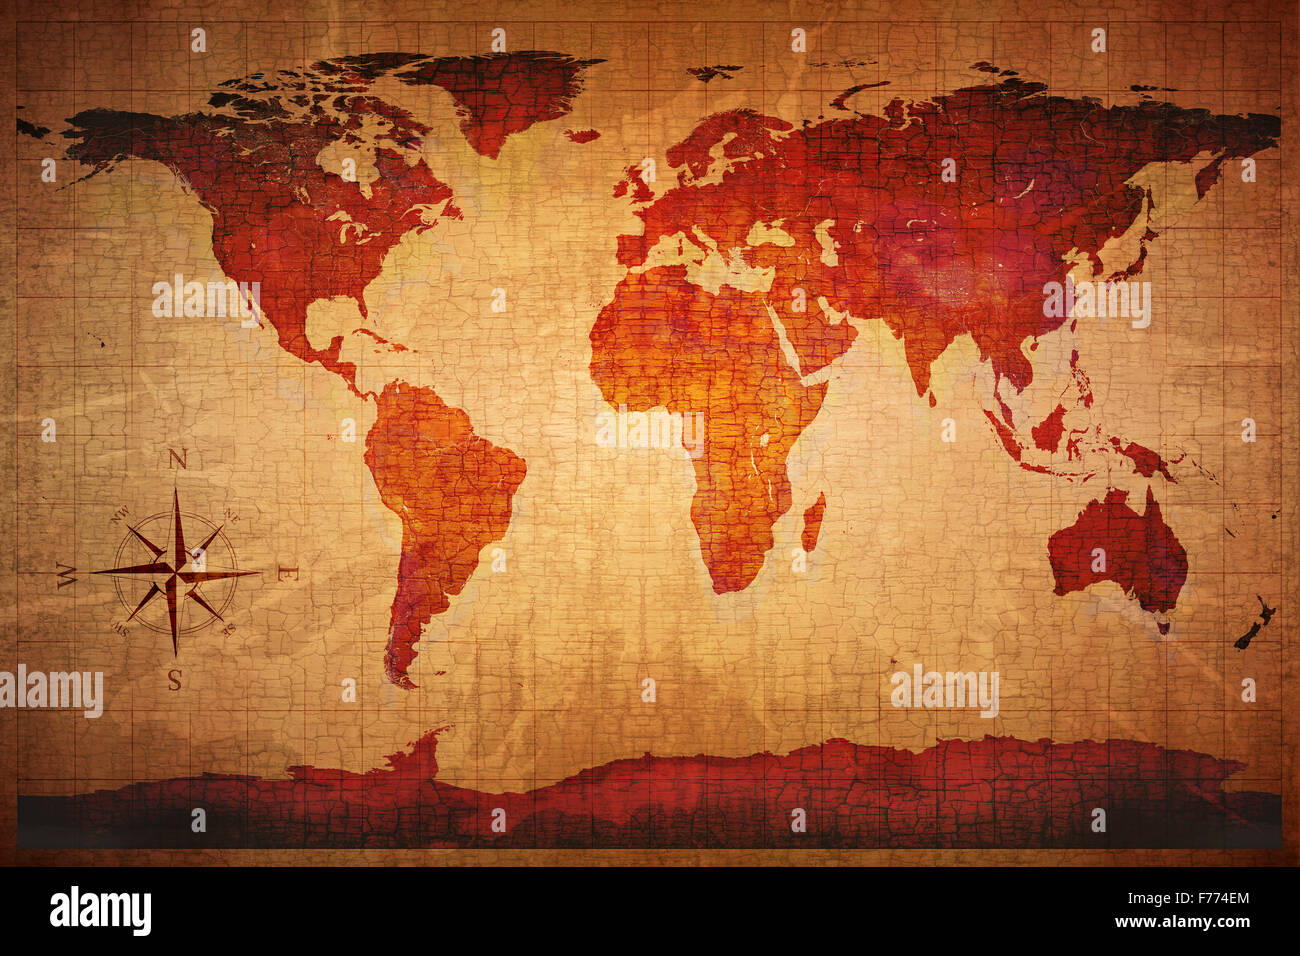 Weltkarte auf alte Grunge Antik und gelbe rissige Papierhintergrund (Karte abgeleitet von http://visibleearth.nasa.gov) Stockfoto